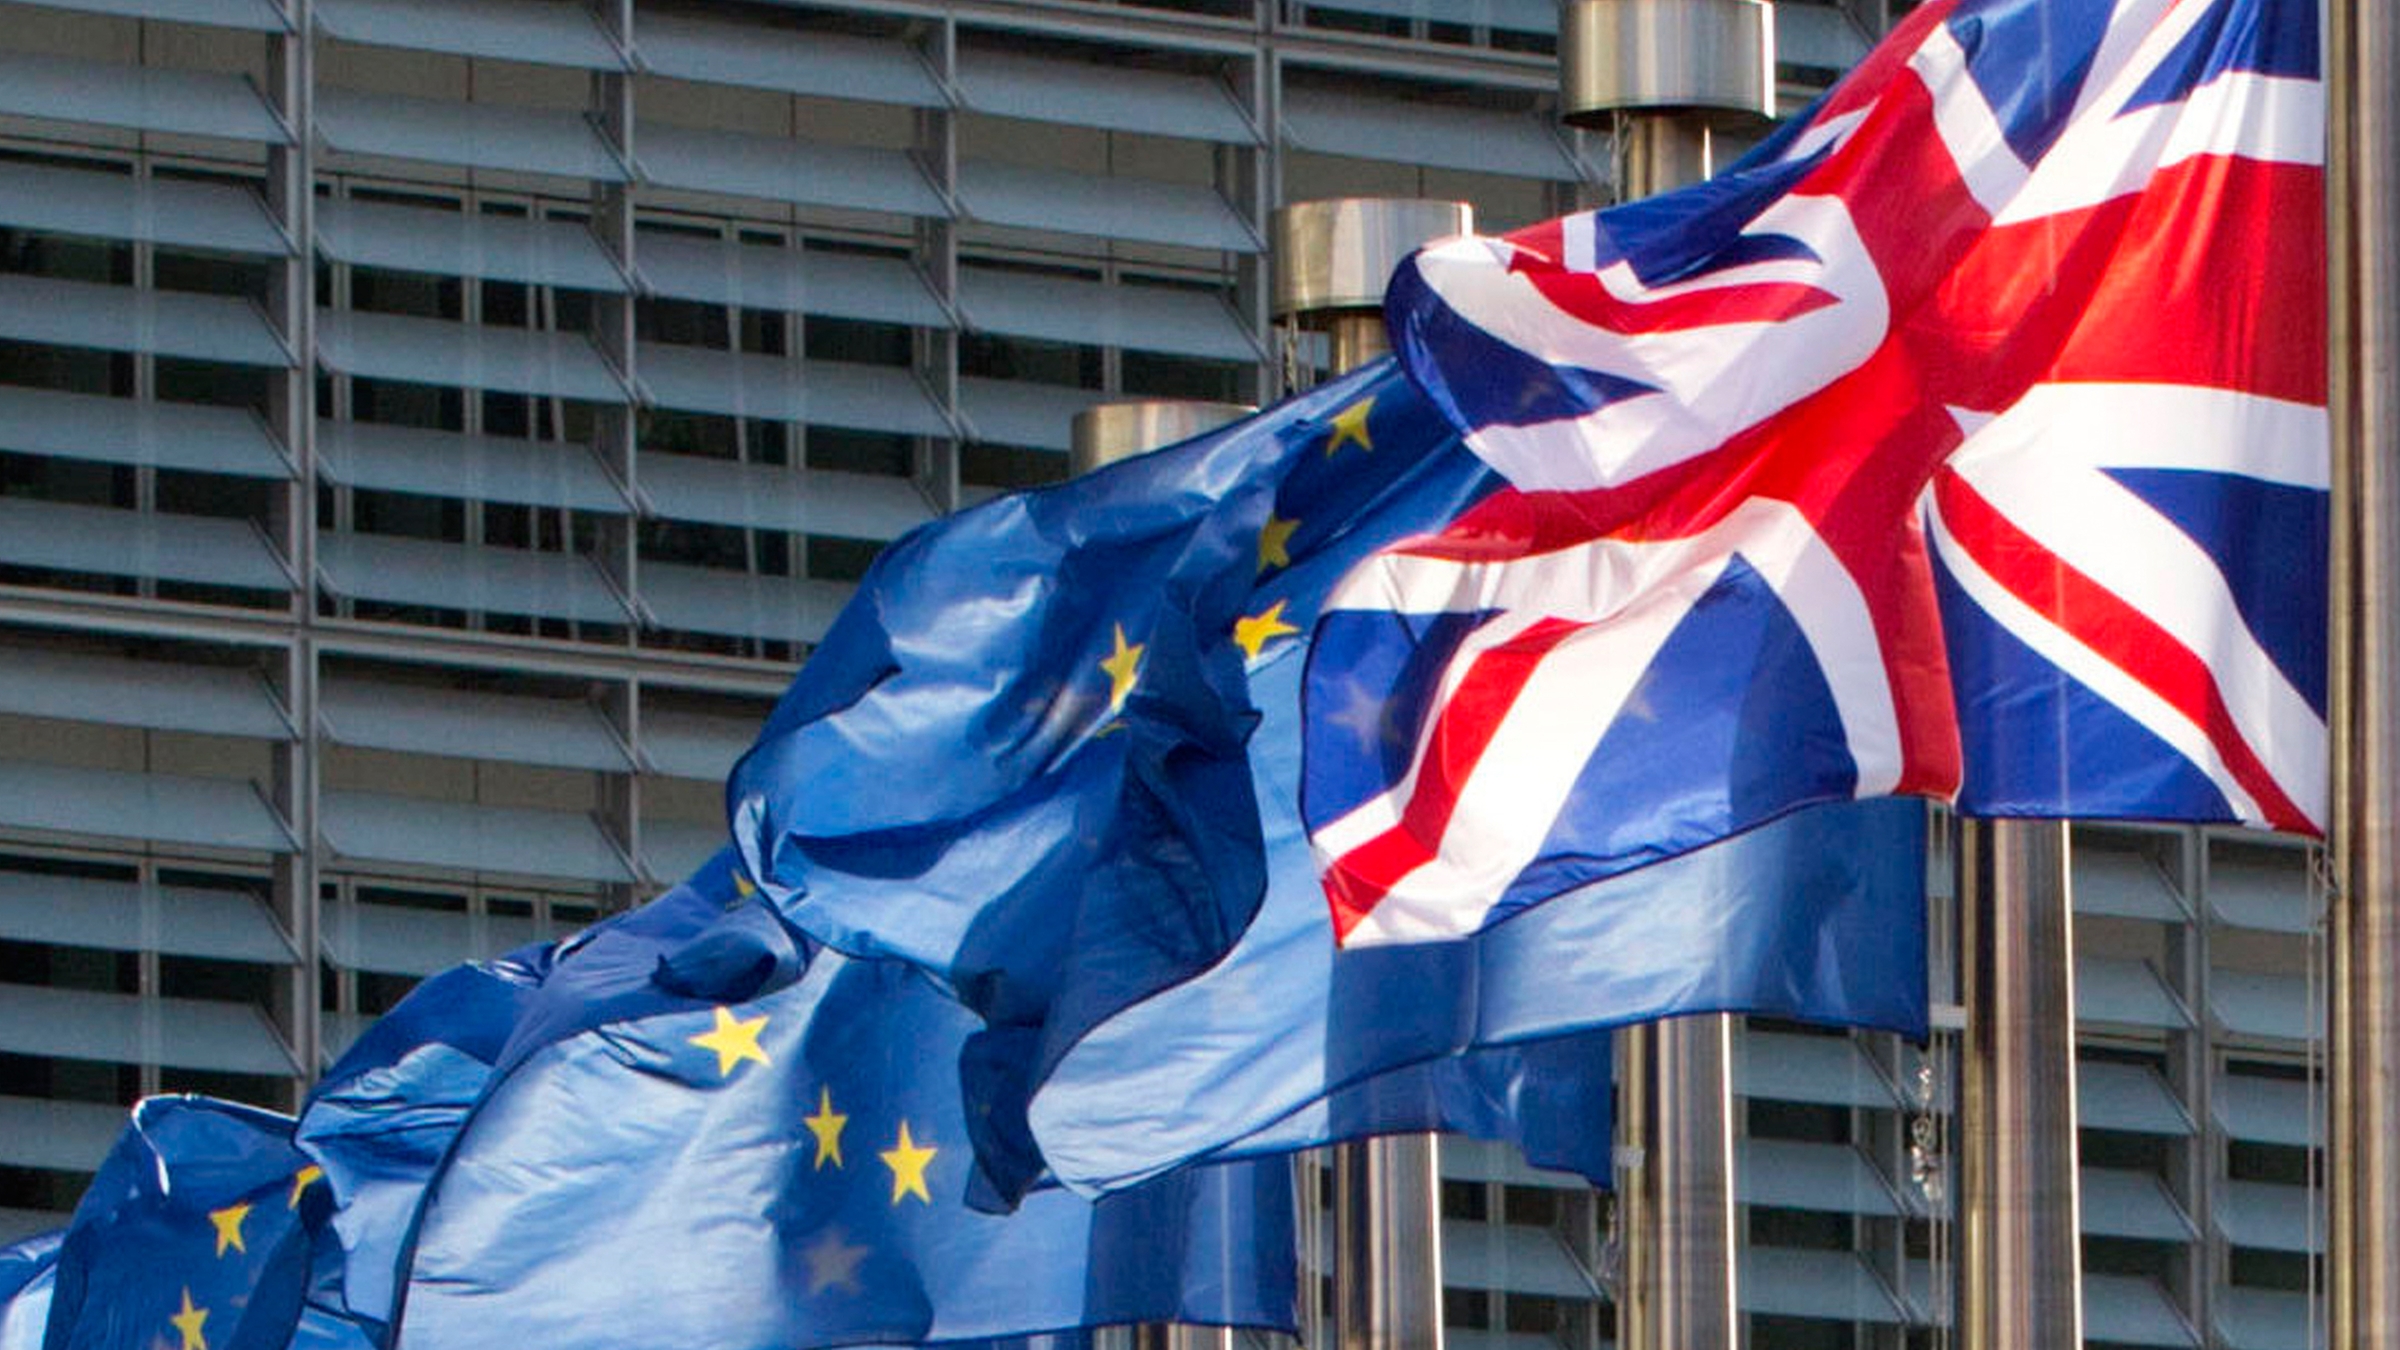 Archiv: Flaggen der EU und von Großbritannien am 16.10.2017 in Brüssel